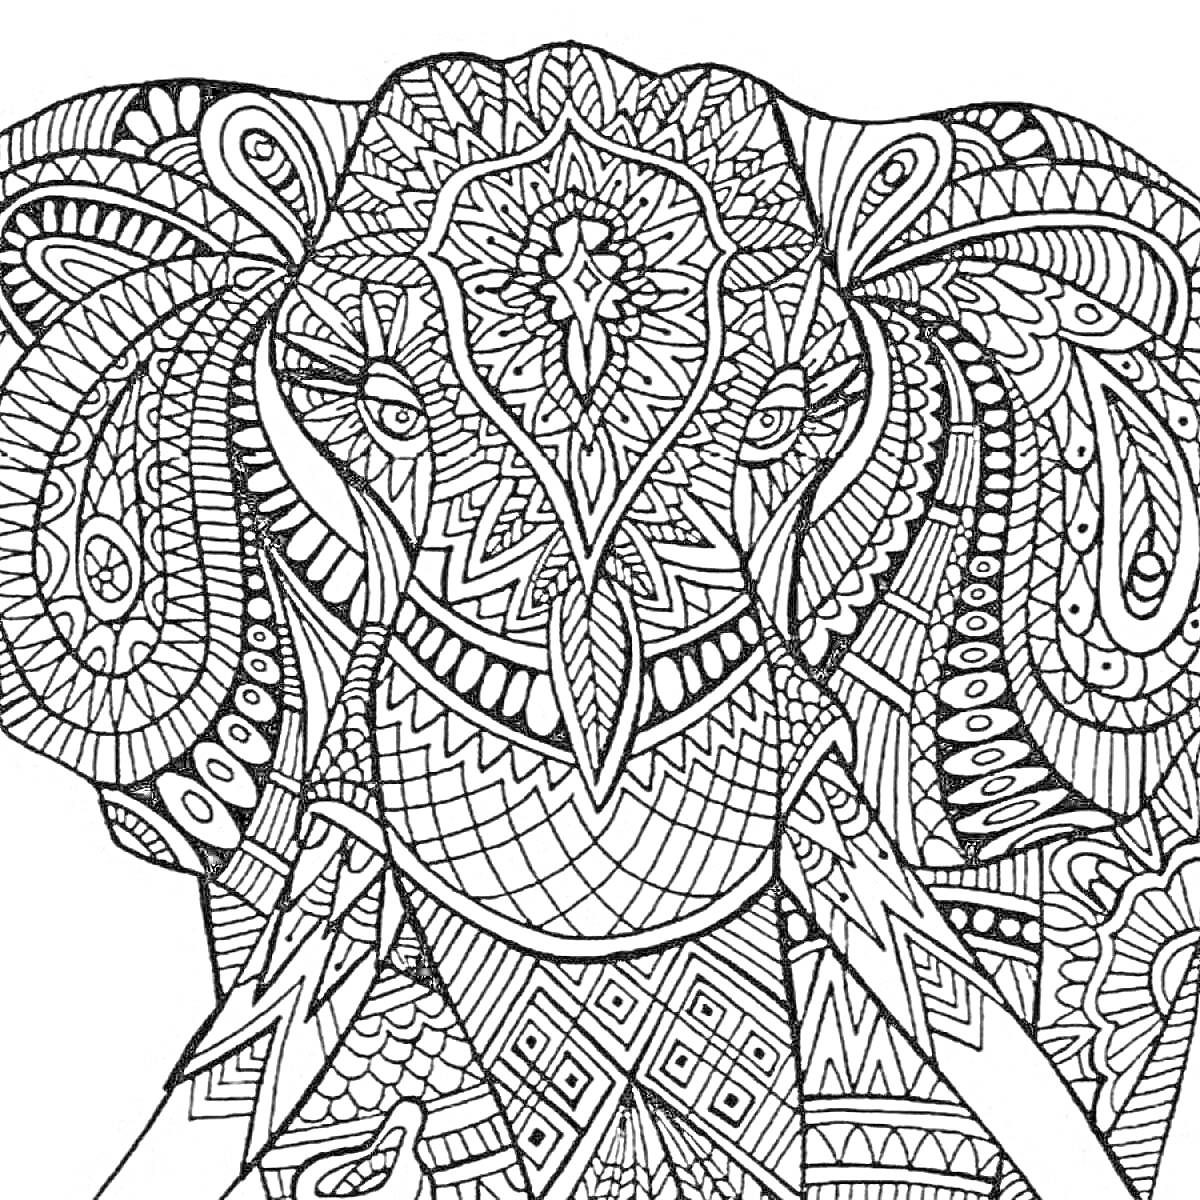 На раскраске изображено: Антистресс, Слон, Узоры, Геометрические фигуры, Мандала, Отдых, Творчество, Медитация, Релакс